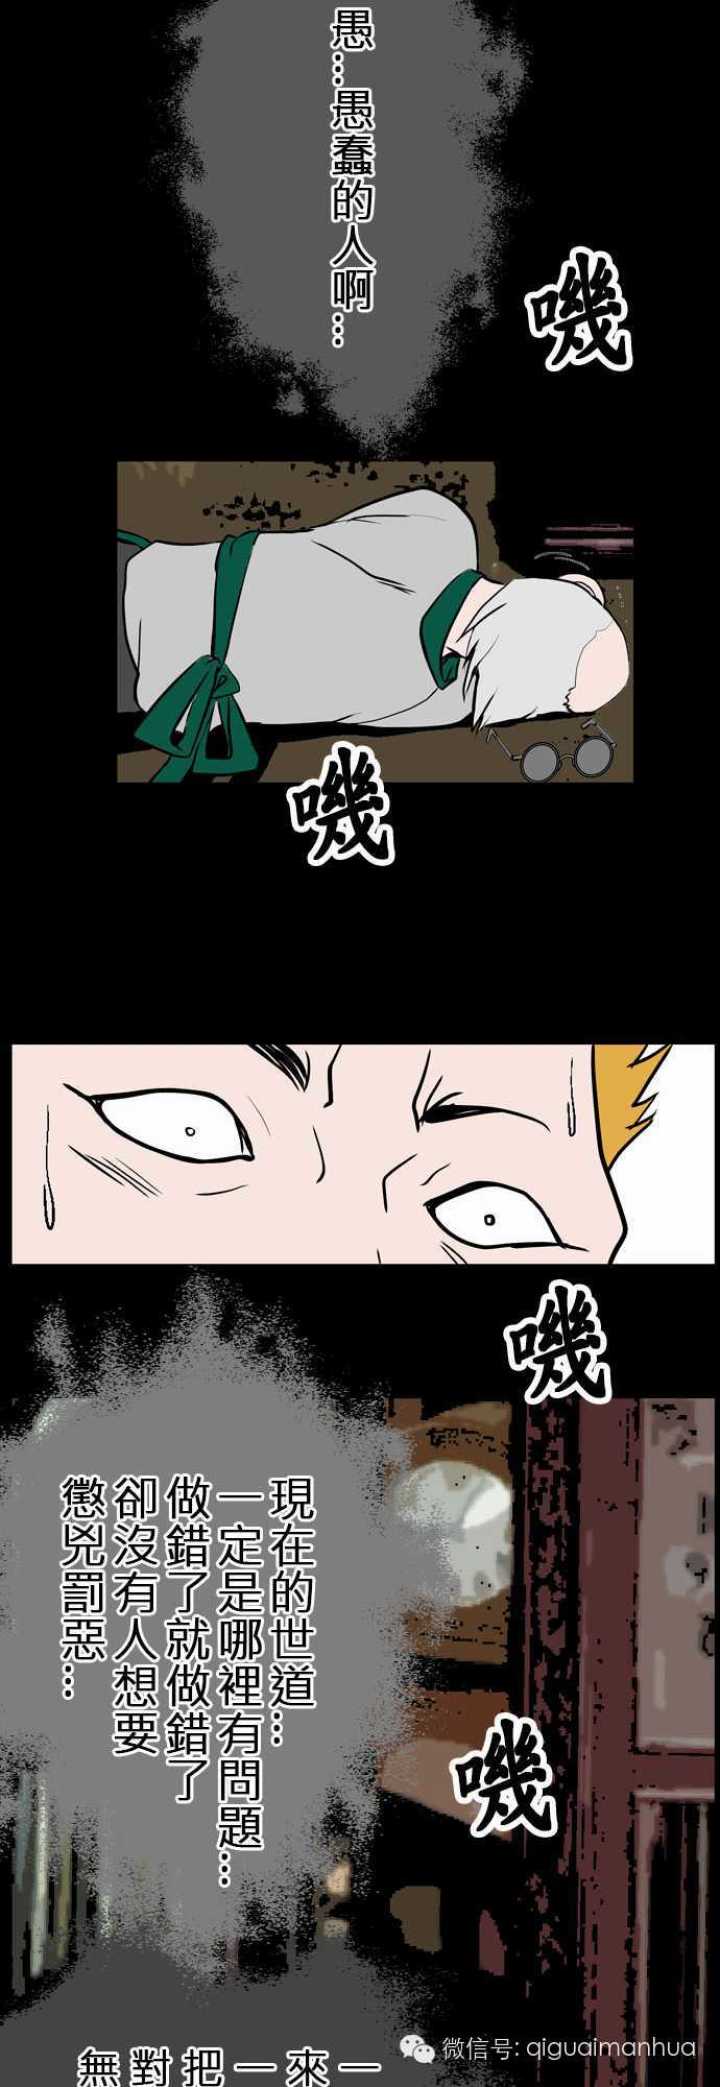 田中宏明奇怪怪奇系列《改良时钟店》-黑白漫话